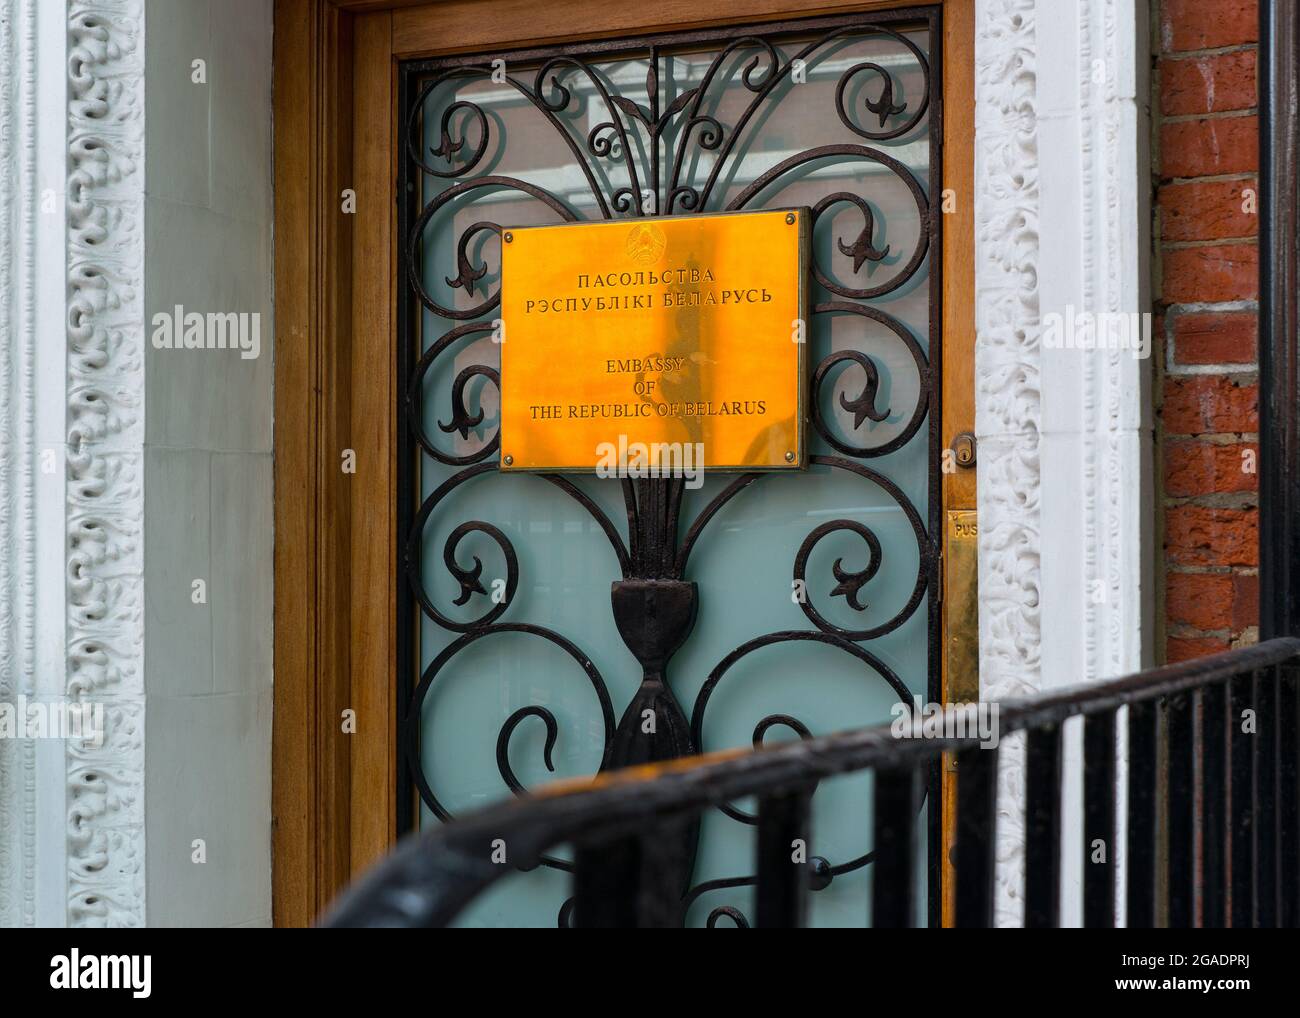 Embassy of the Republic of Belarus, door plaque, Kensington Court, London Stock Photo